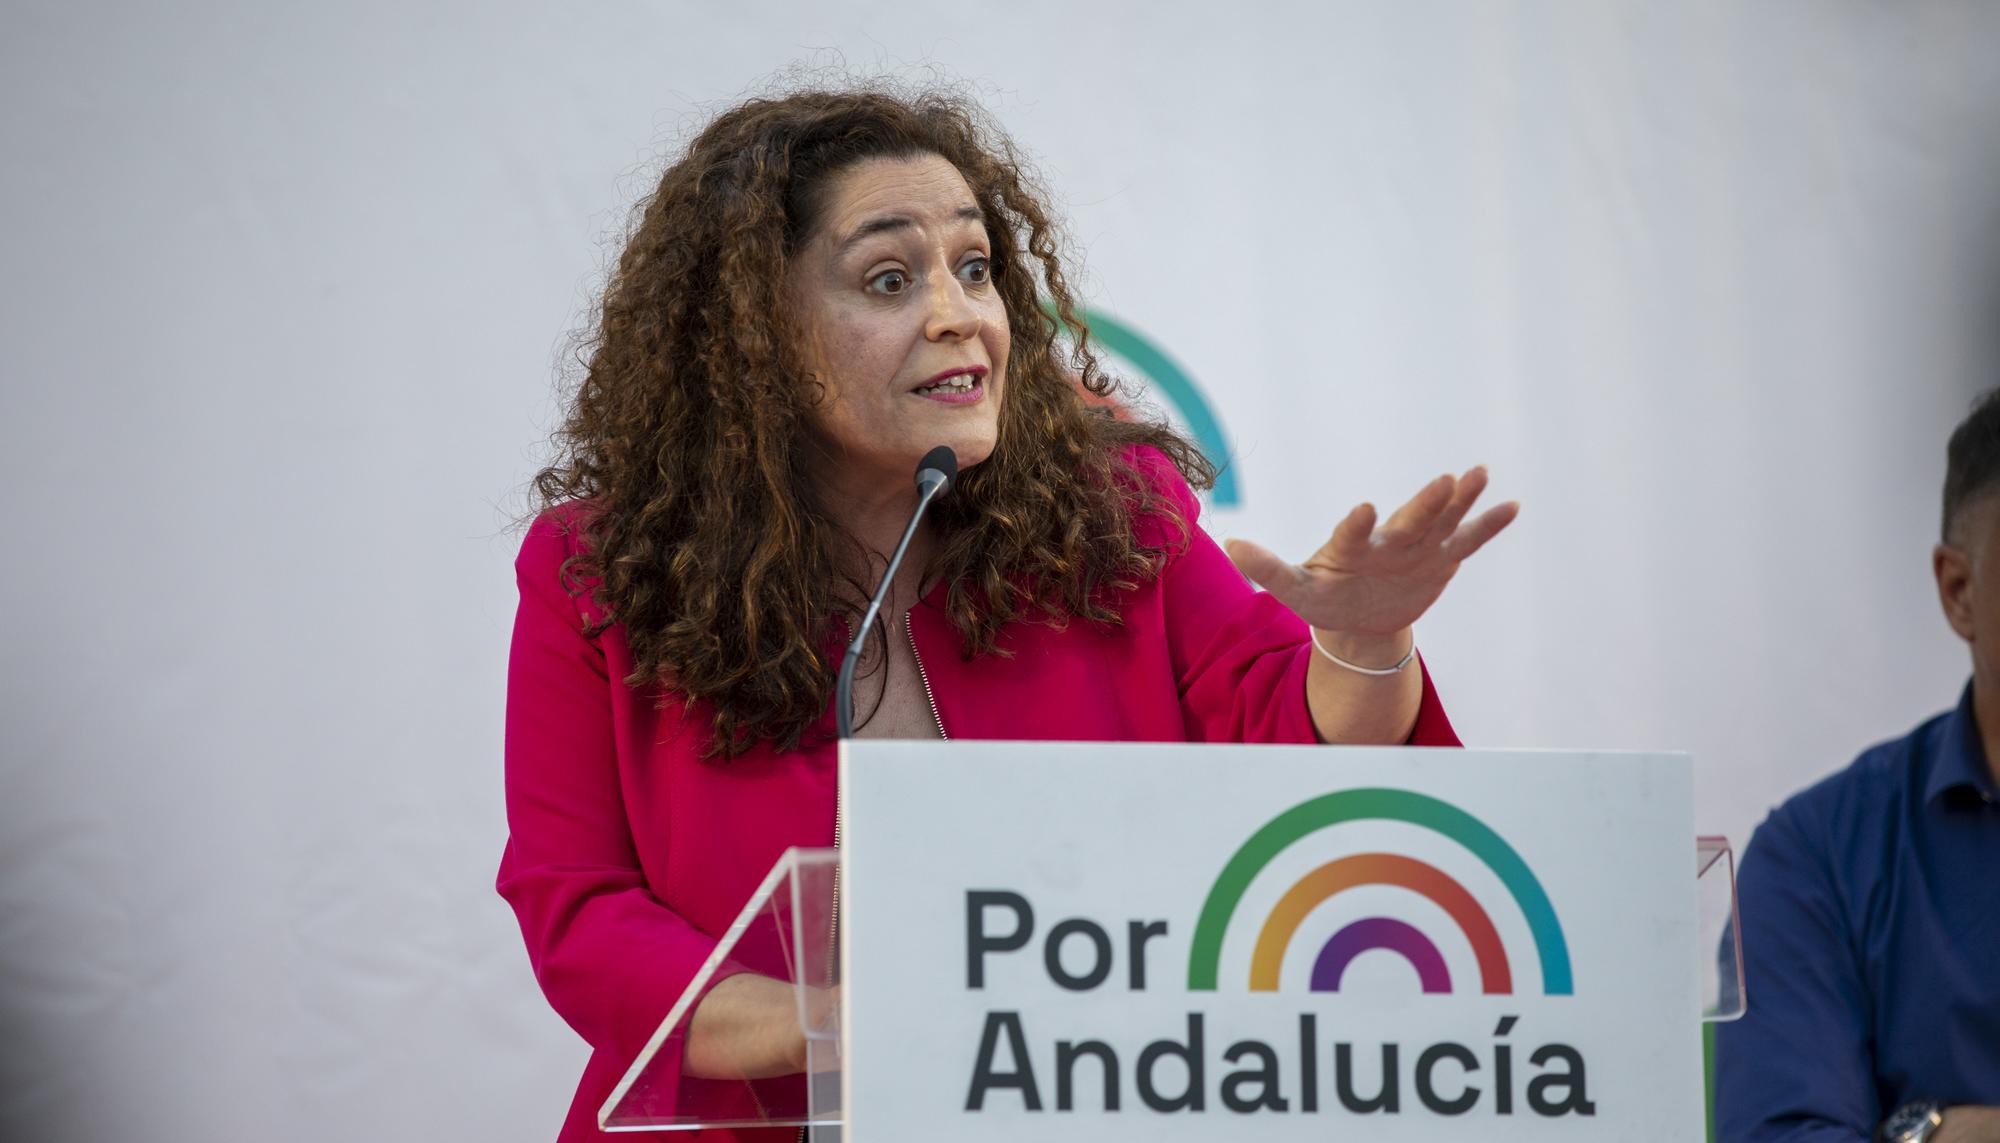 Inicio campaña Por Andalucia - 4